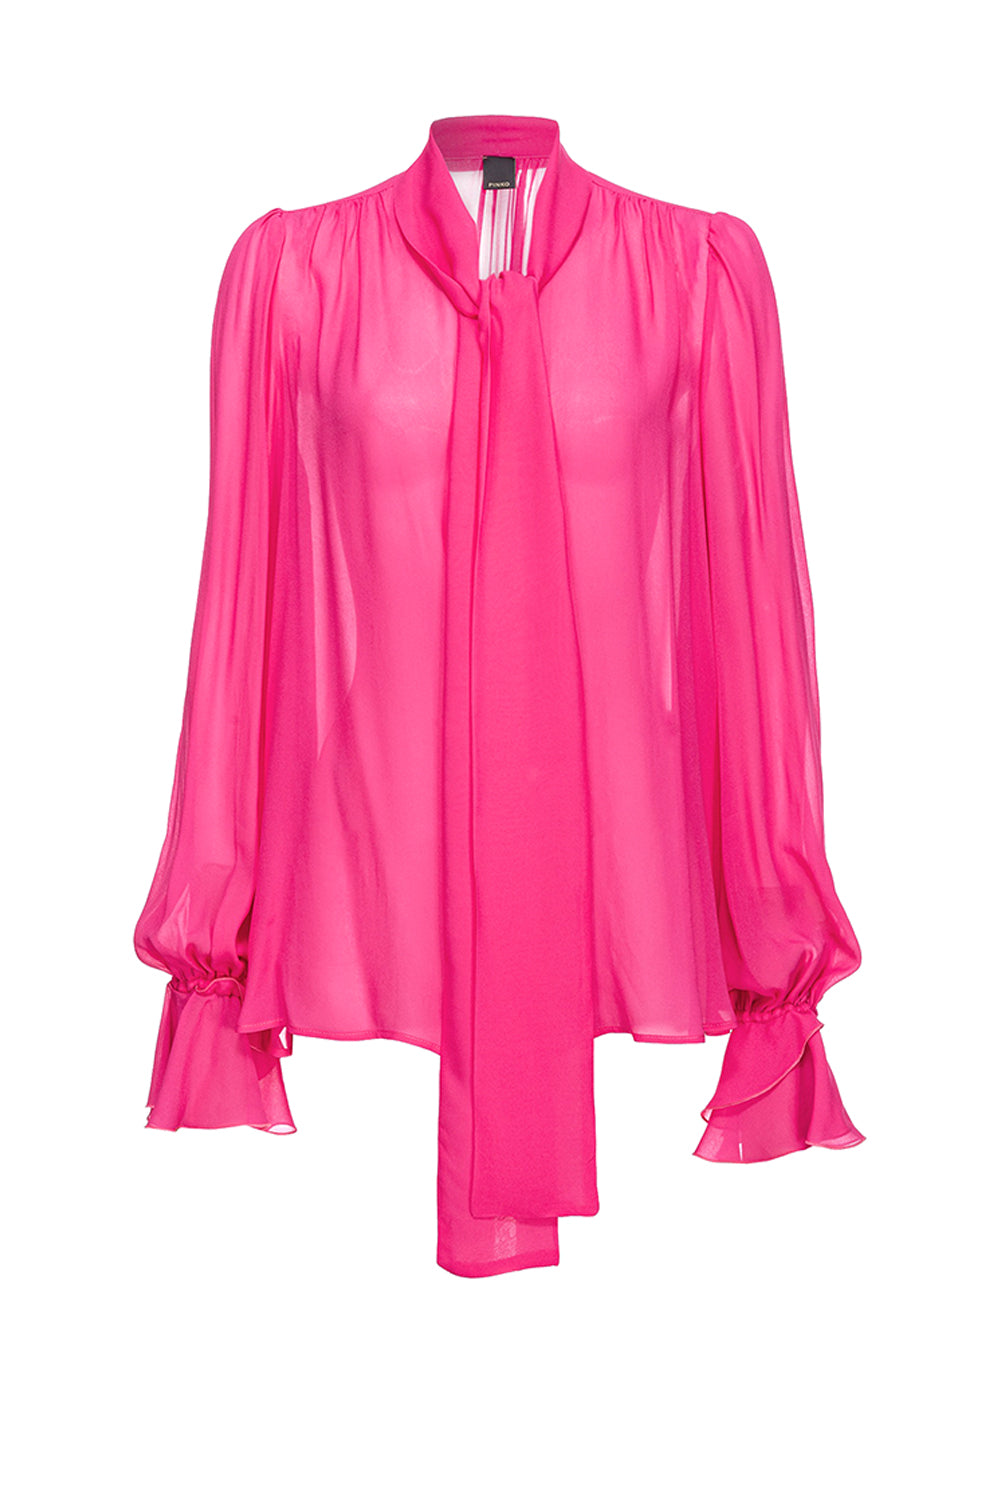  Pinko Blusa Rouches Pink Pinko Woman - 1